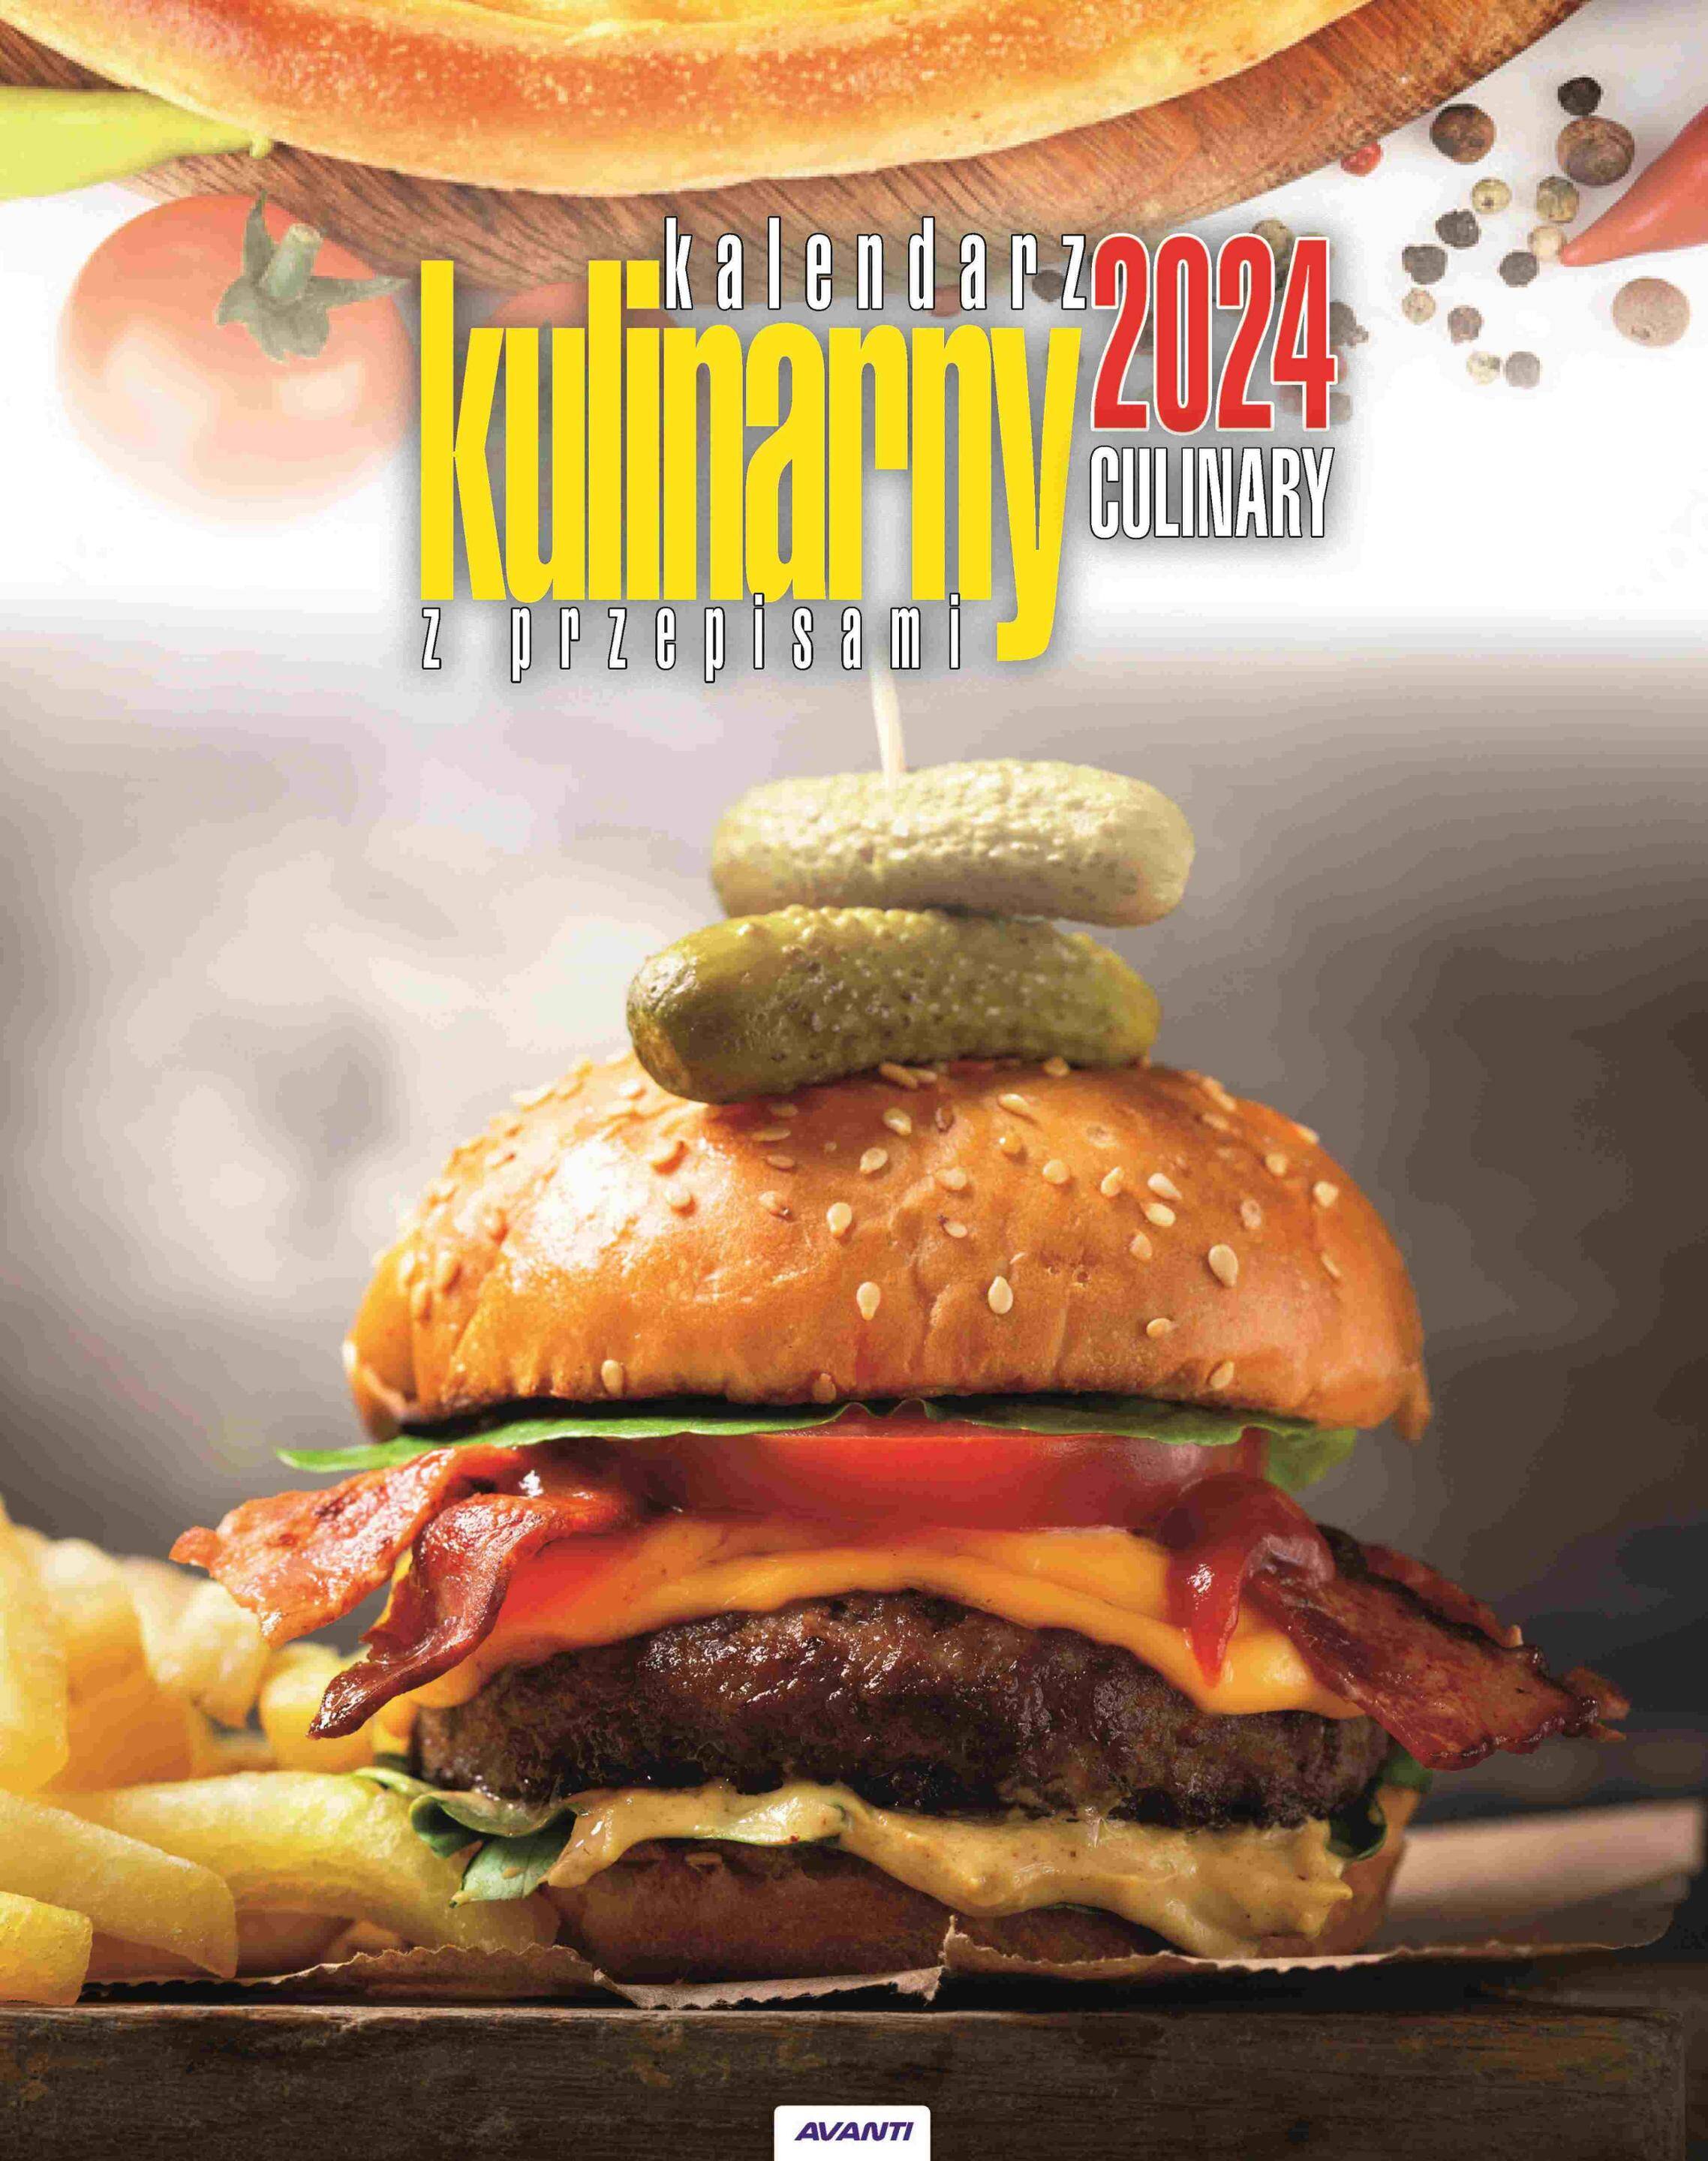 Kalendarz 2024 Kulinarny z przepisami KSMS-2 ścienny mały